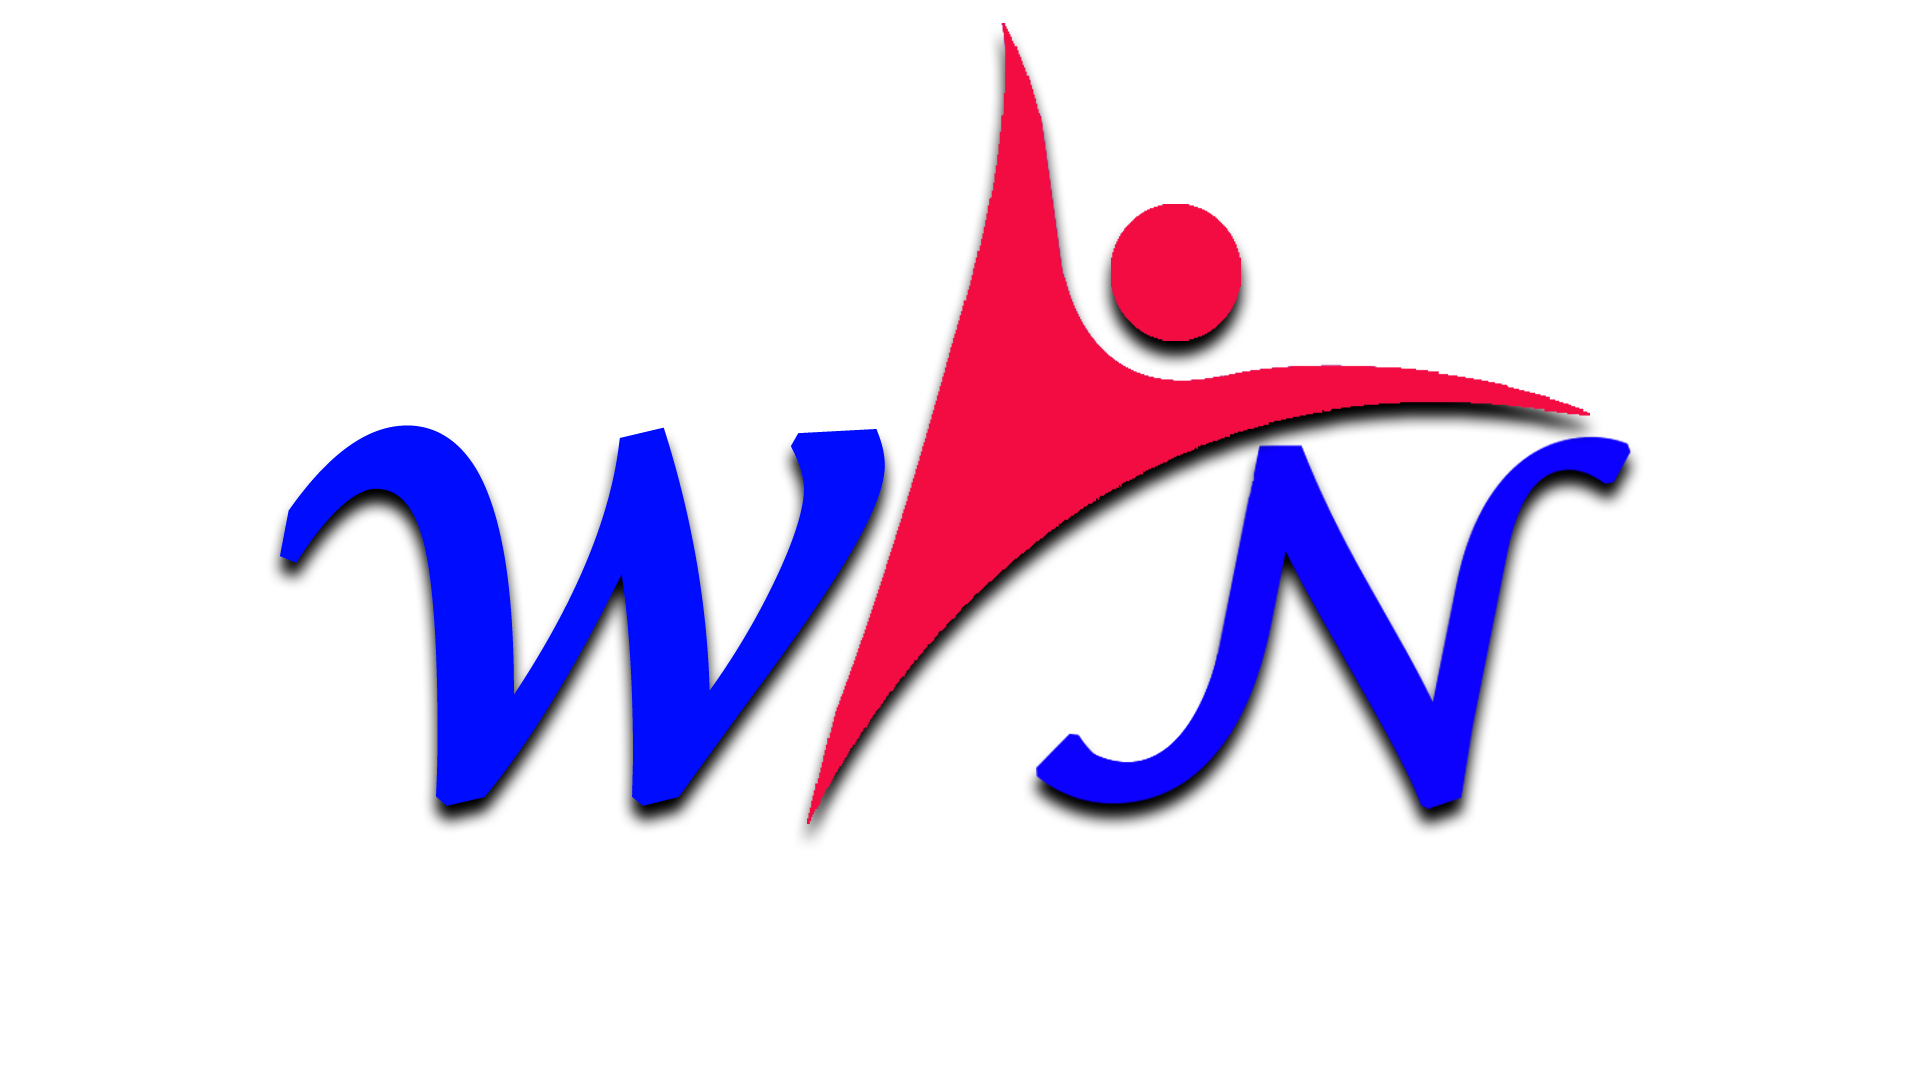 Wisdom Ingress Inc